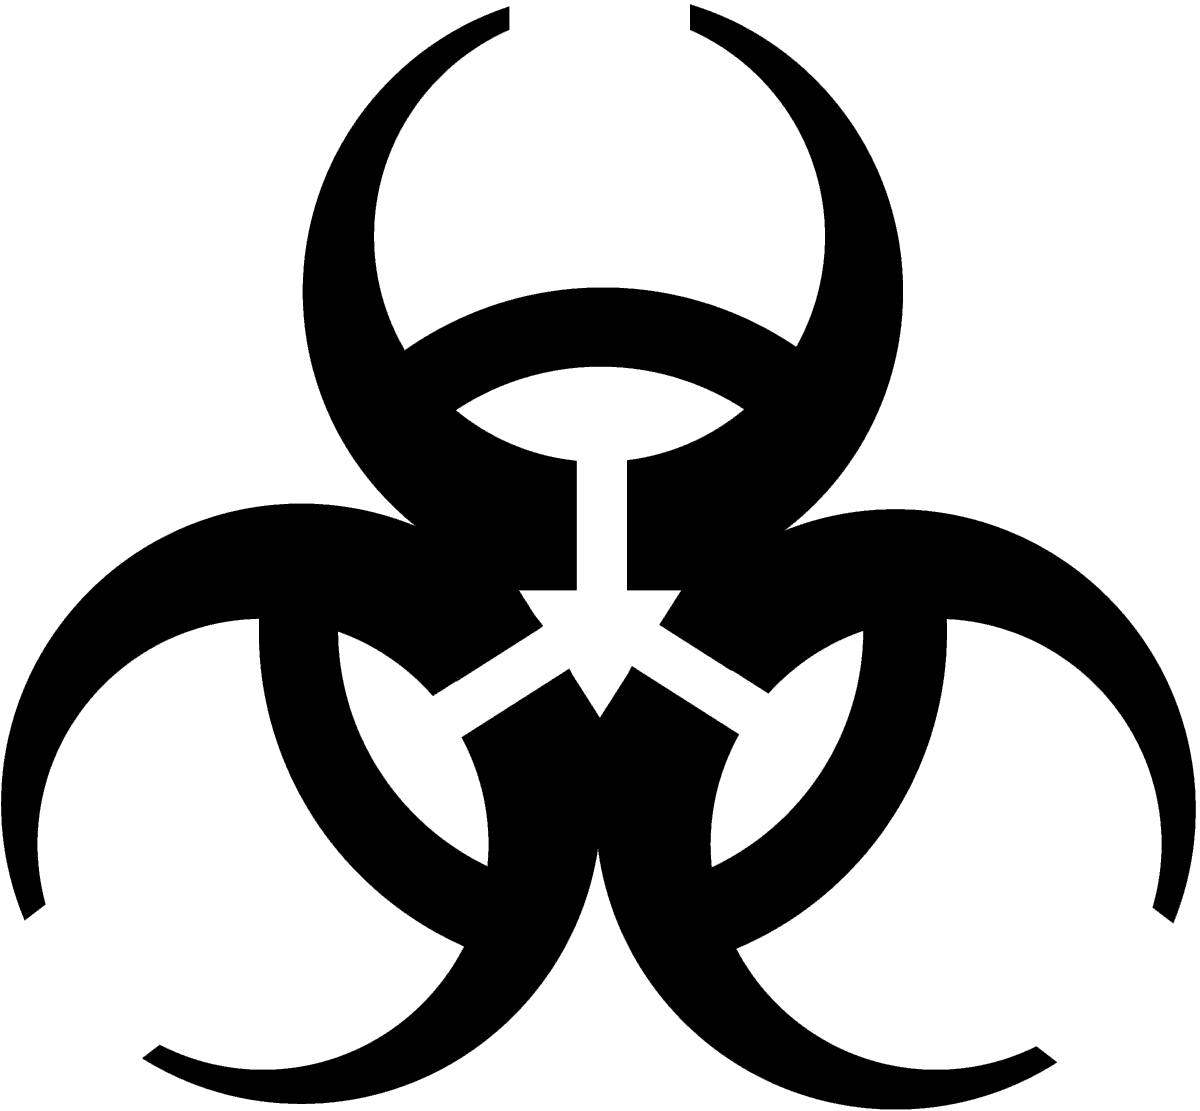 Biohazard Symbol No Background - KibrisPDR